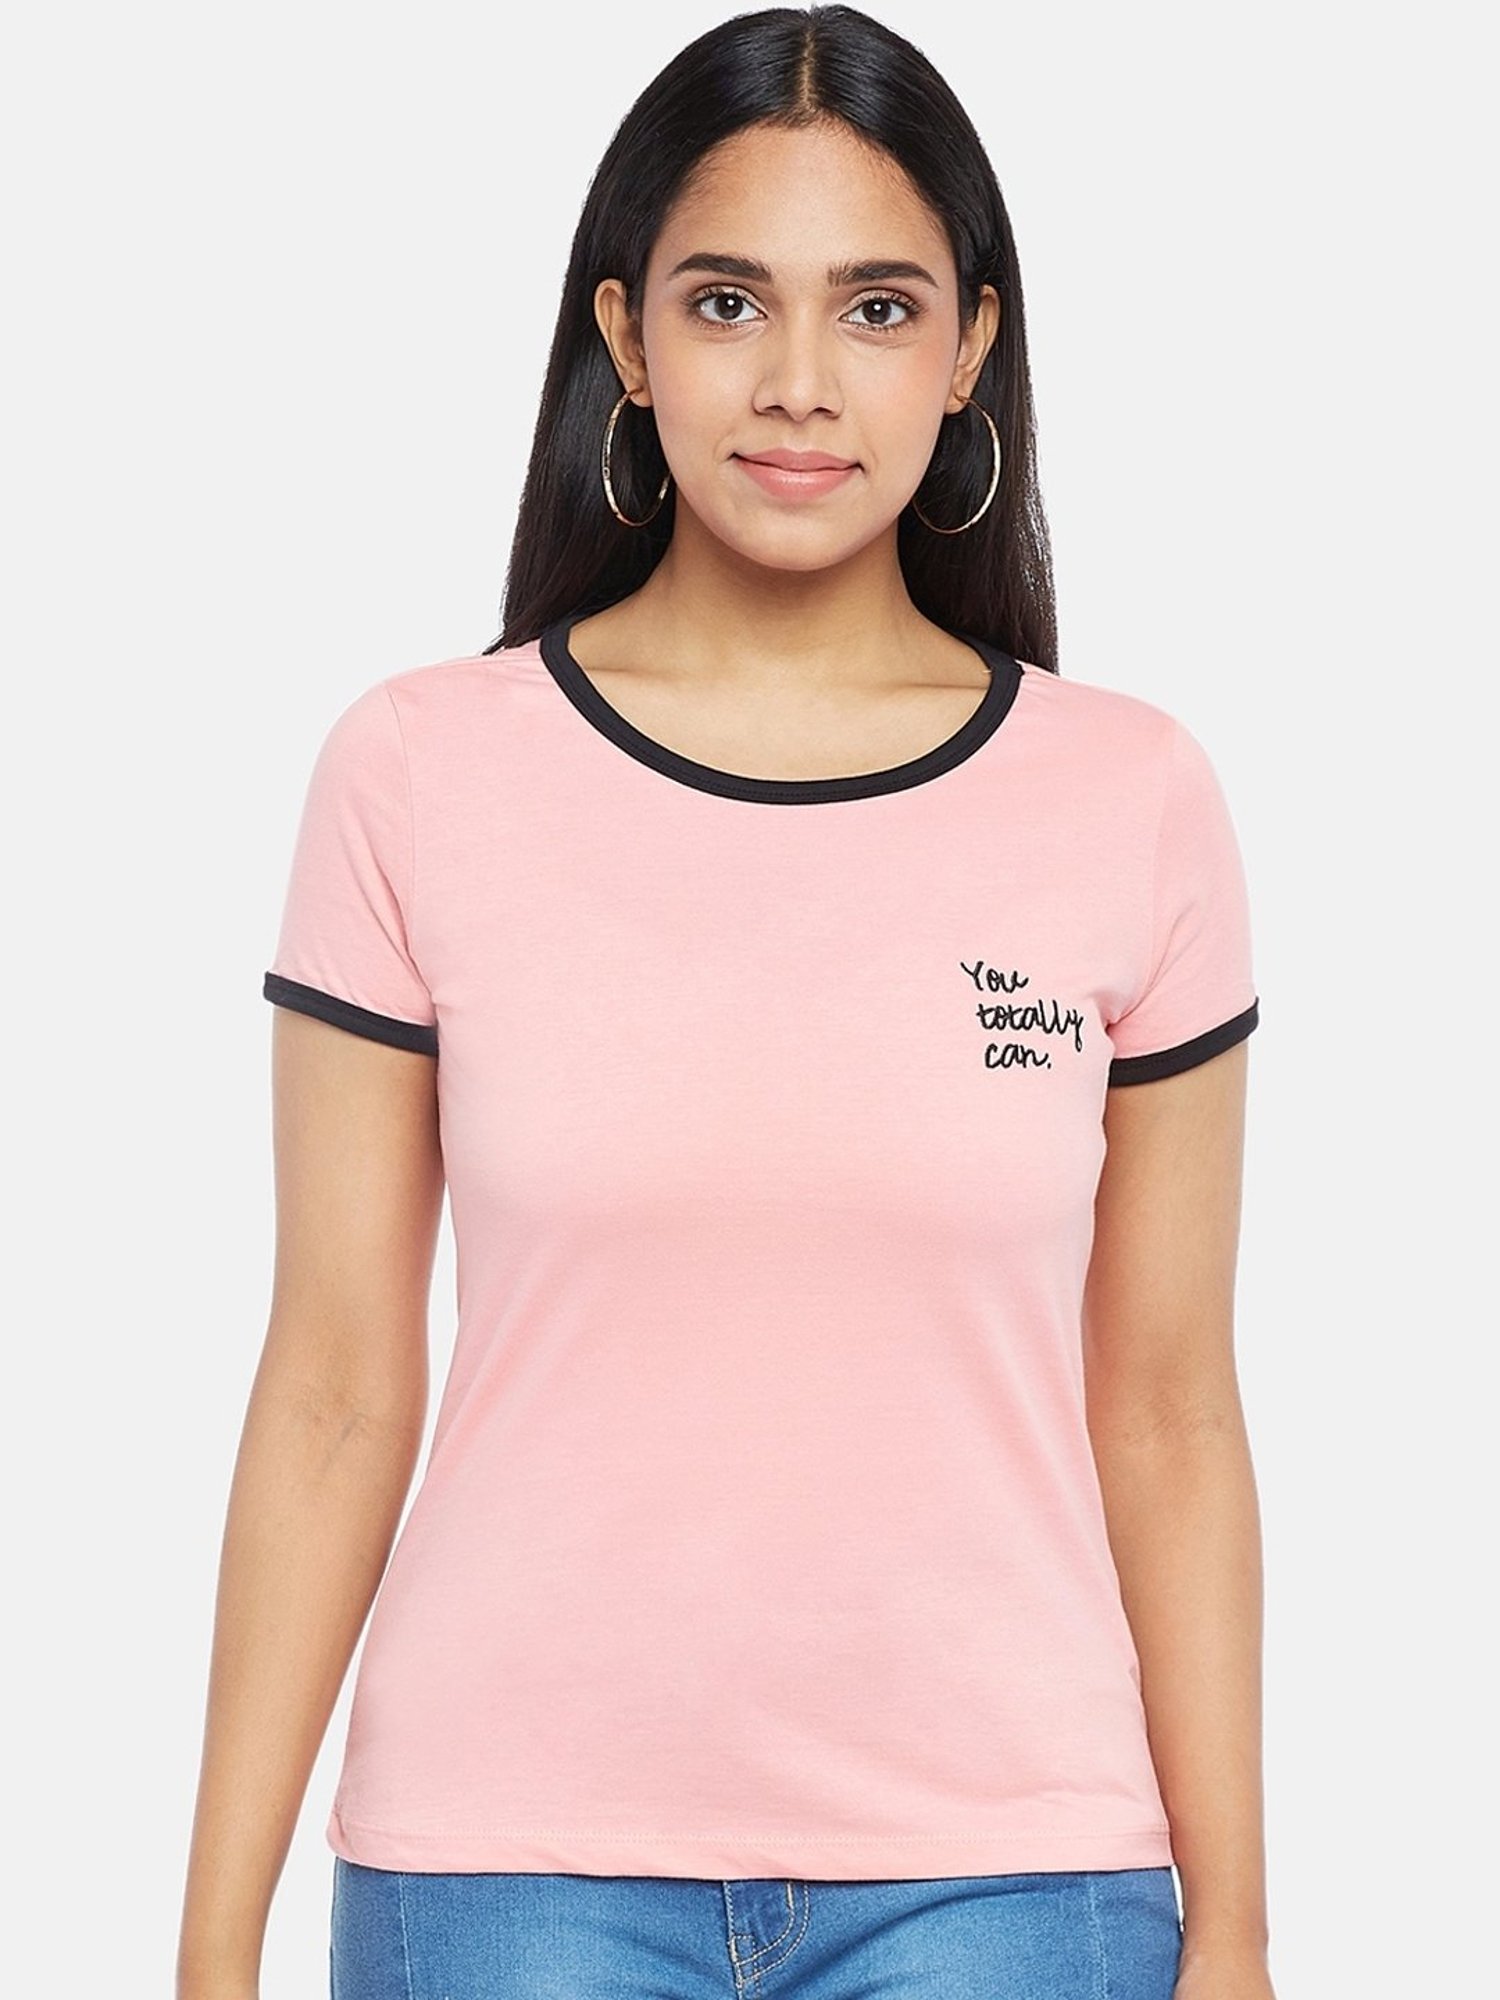 Honey by Pantaloons Pink Cotton Printed T-Shirt